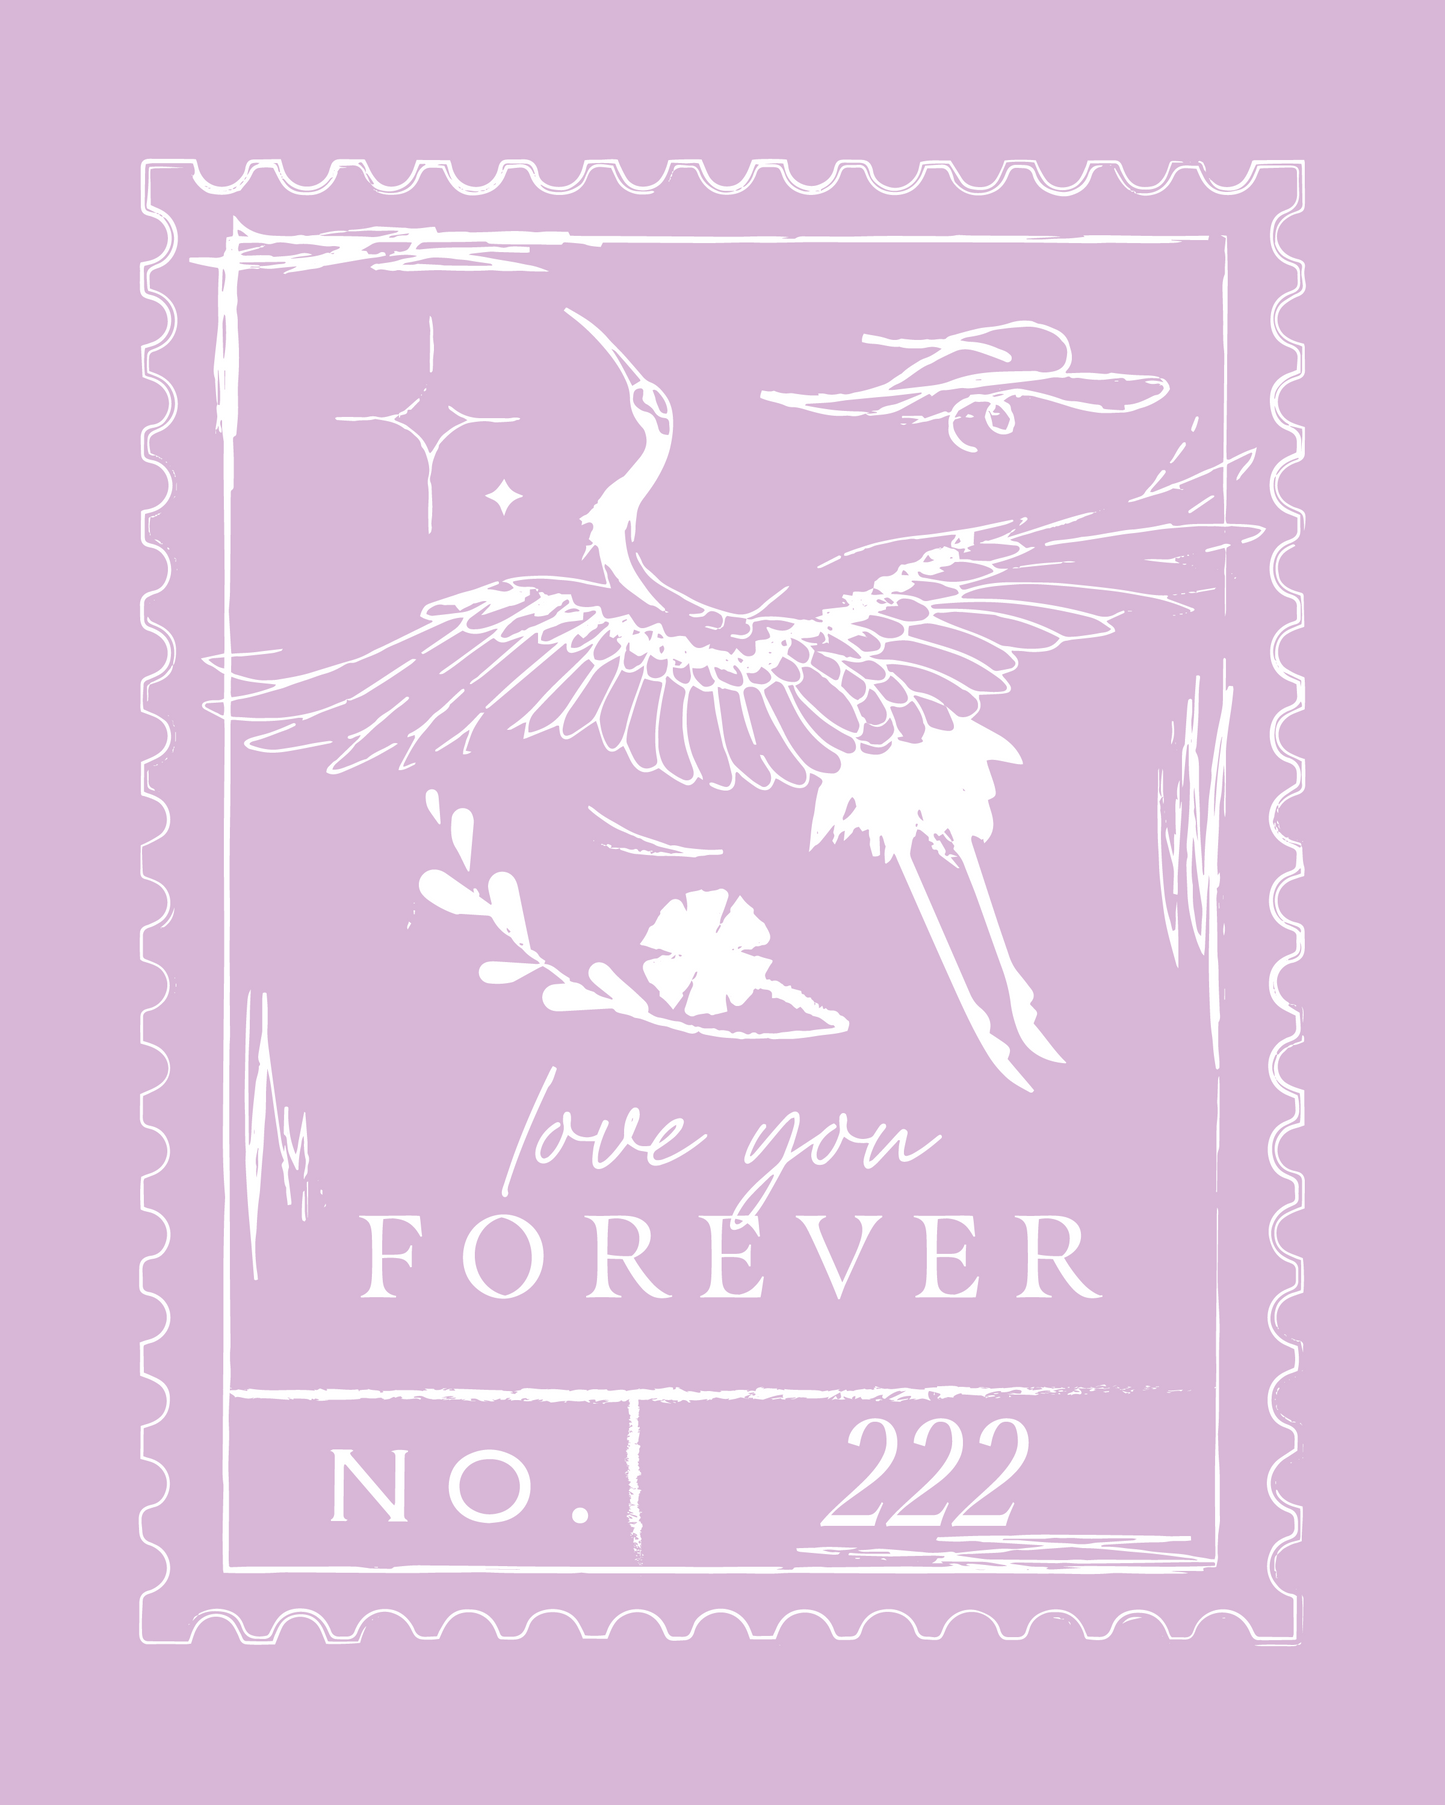 Forever Stamp Print